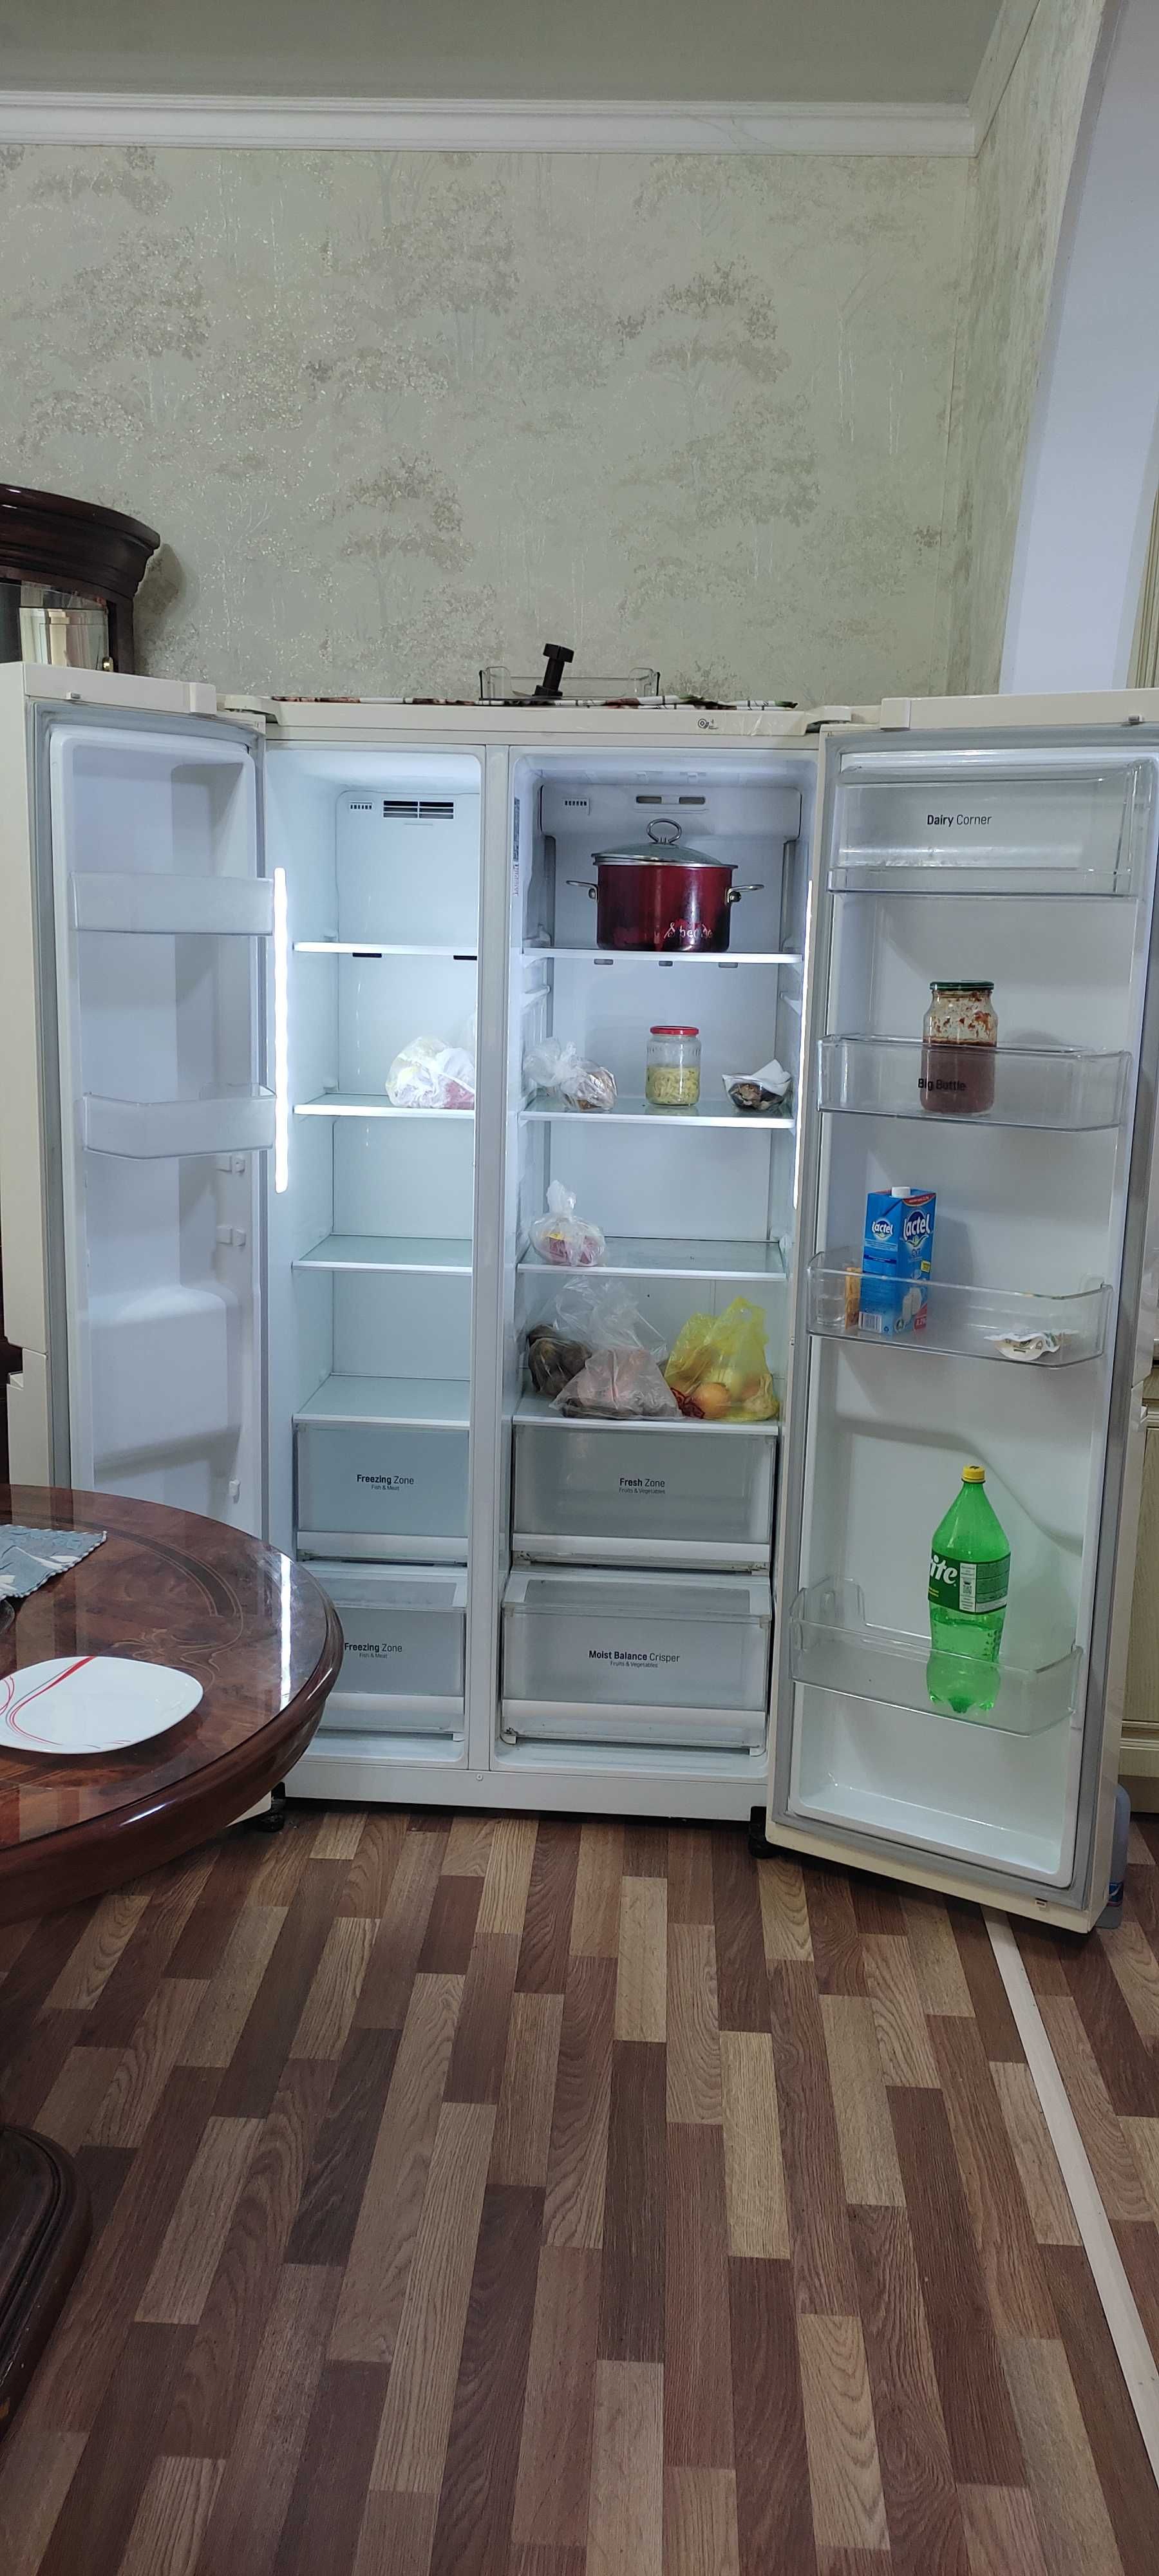 Холодильник LG Side by side за 290 тысяч тенге. Торг